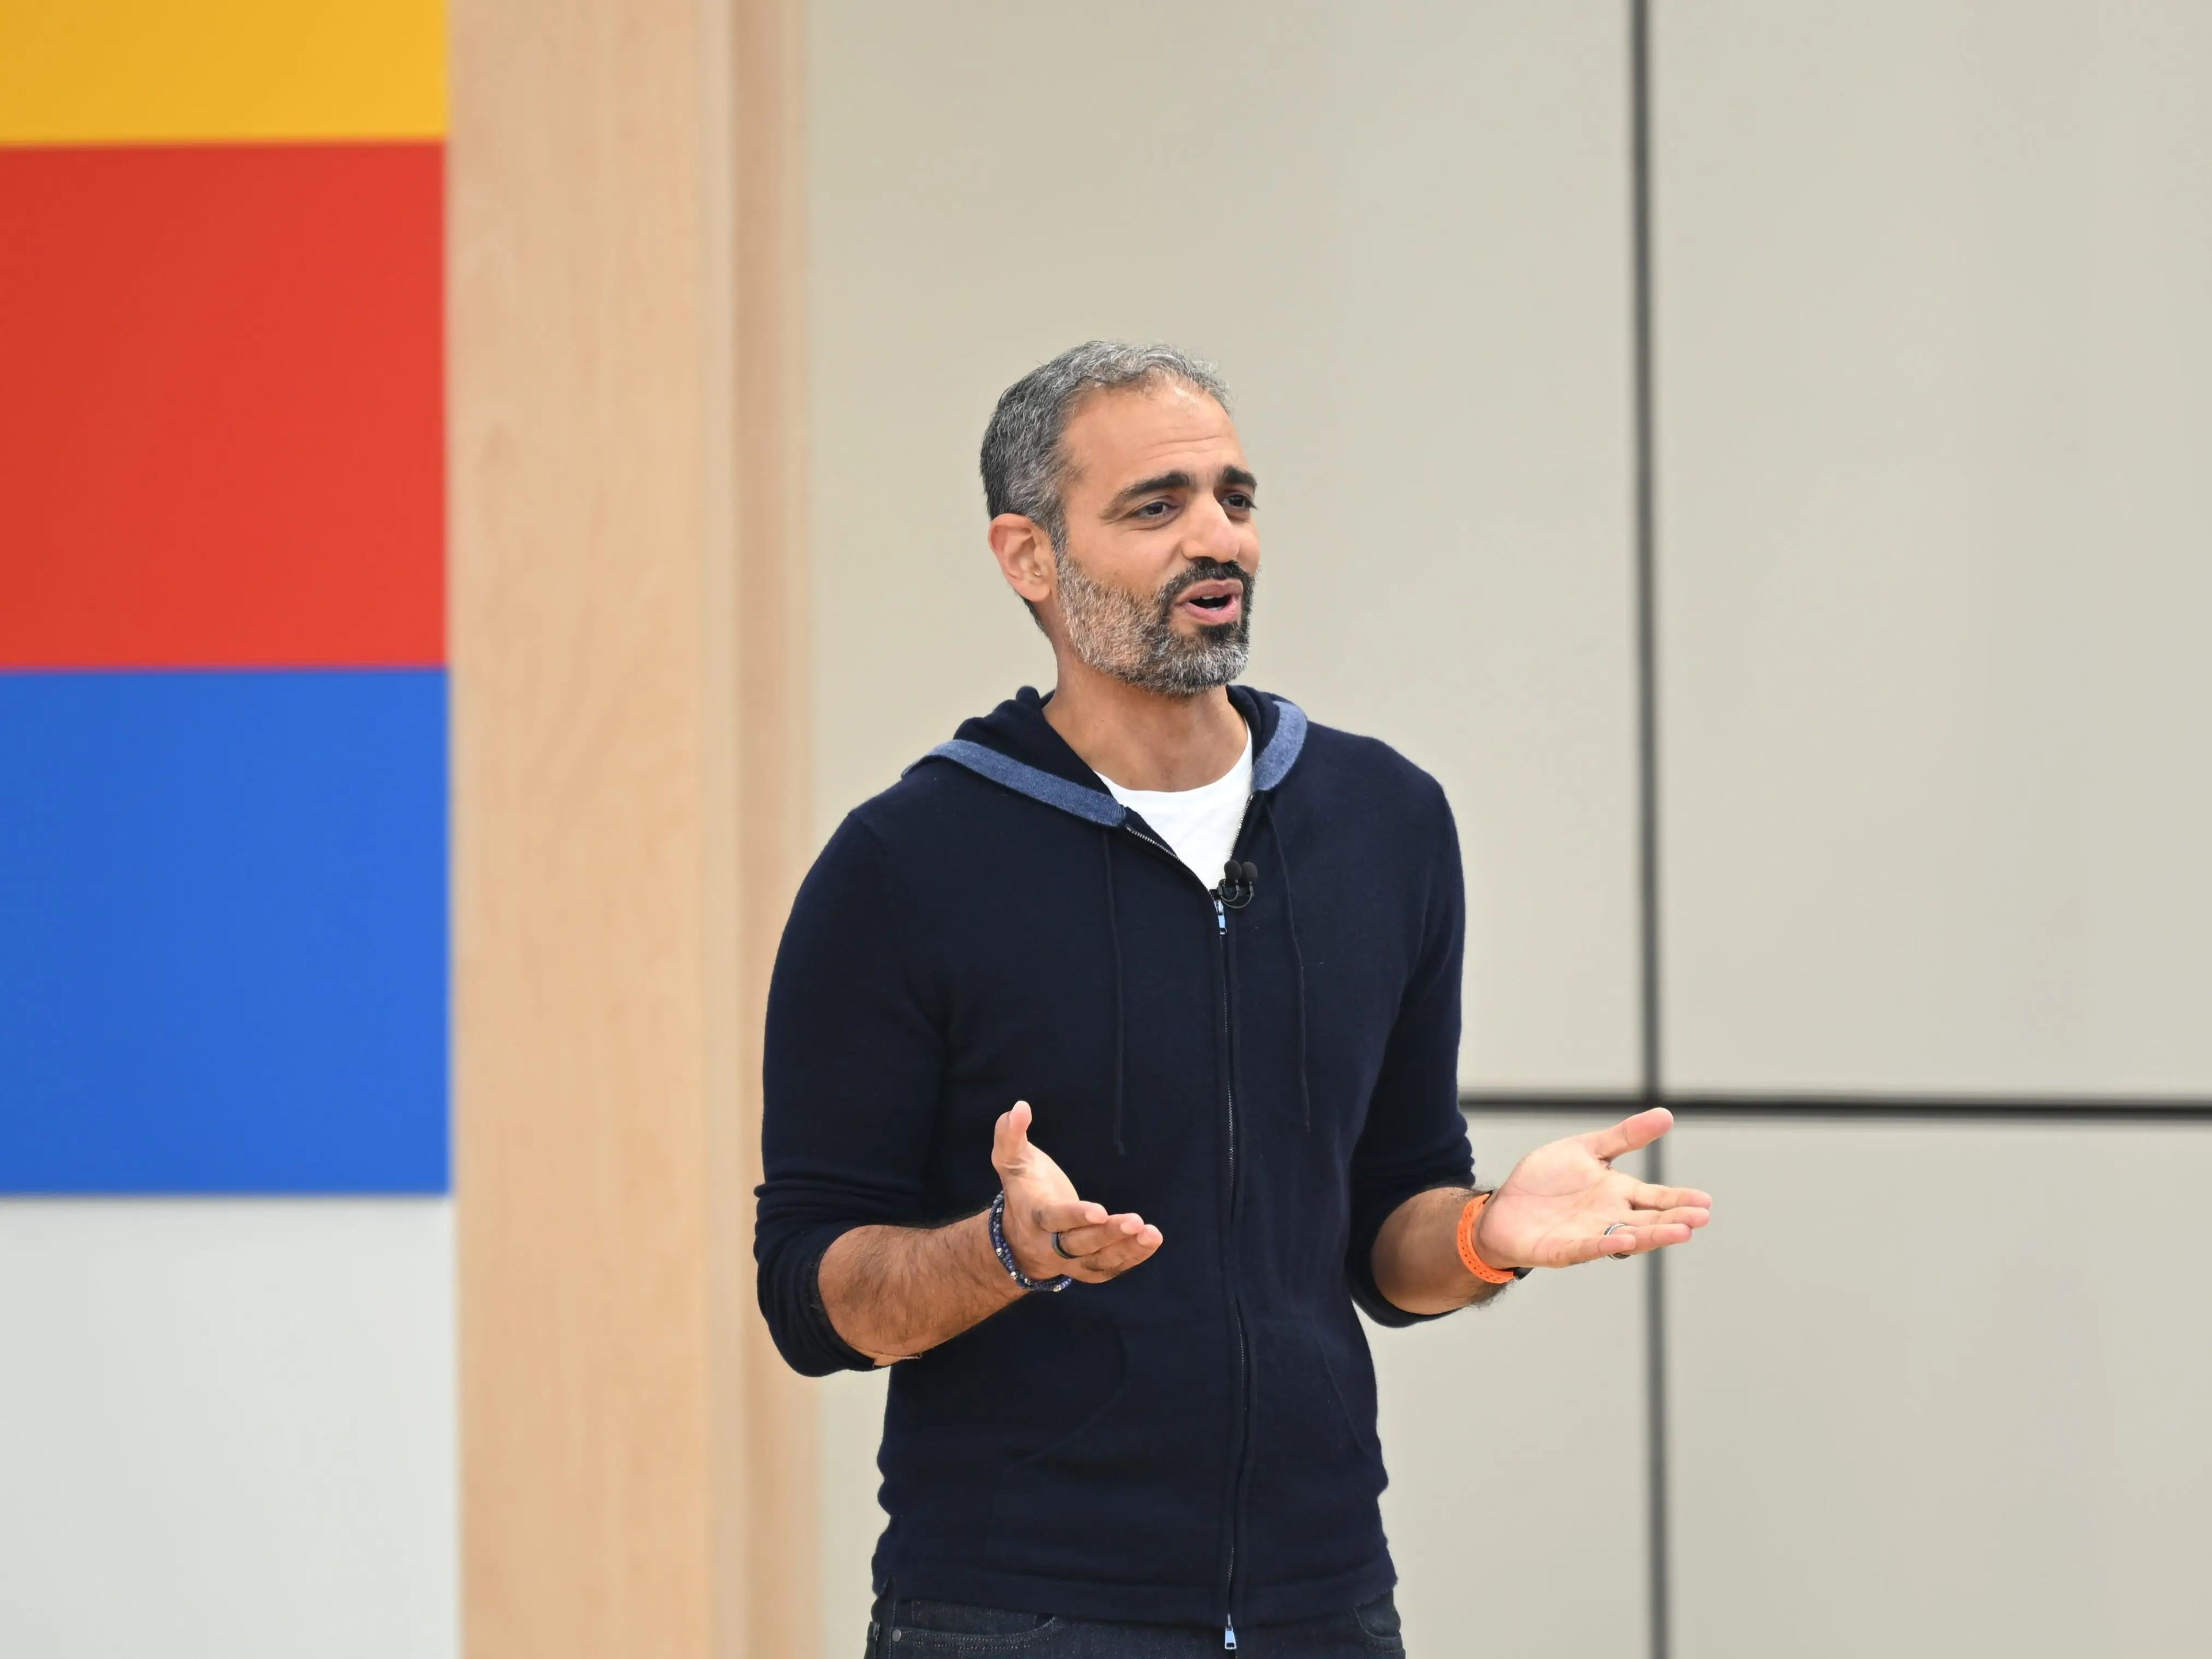 Sameer Samat, jefe de Android, hablando en un escenario durante un evento de Google.